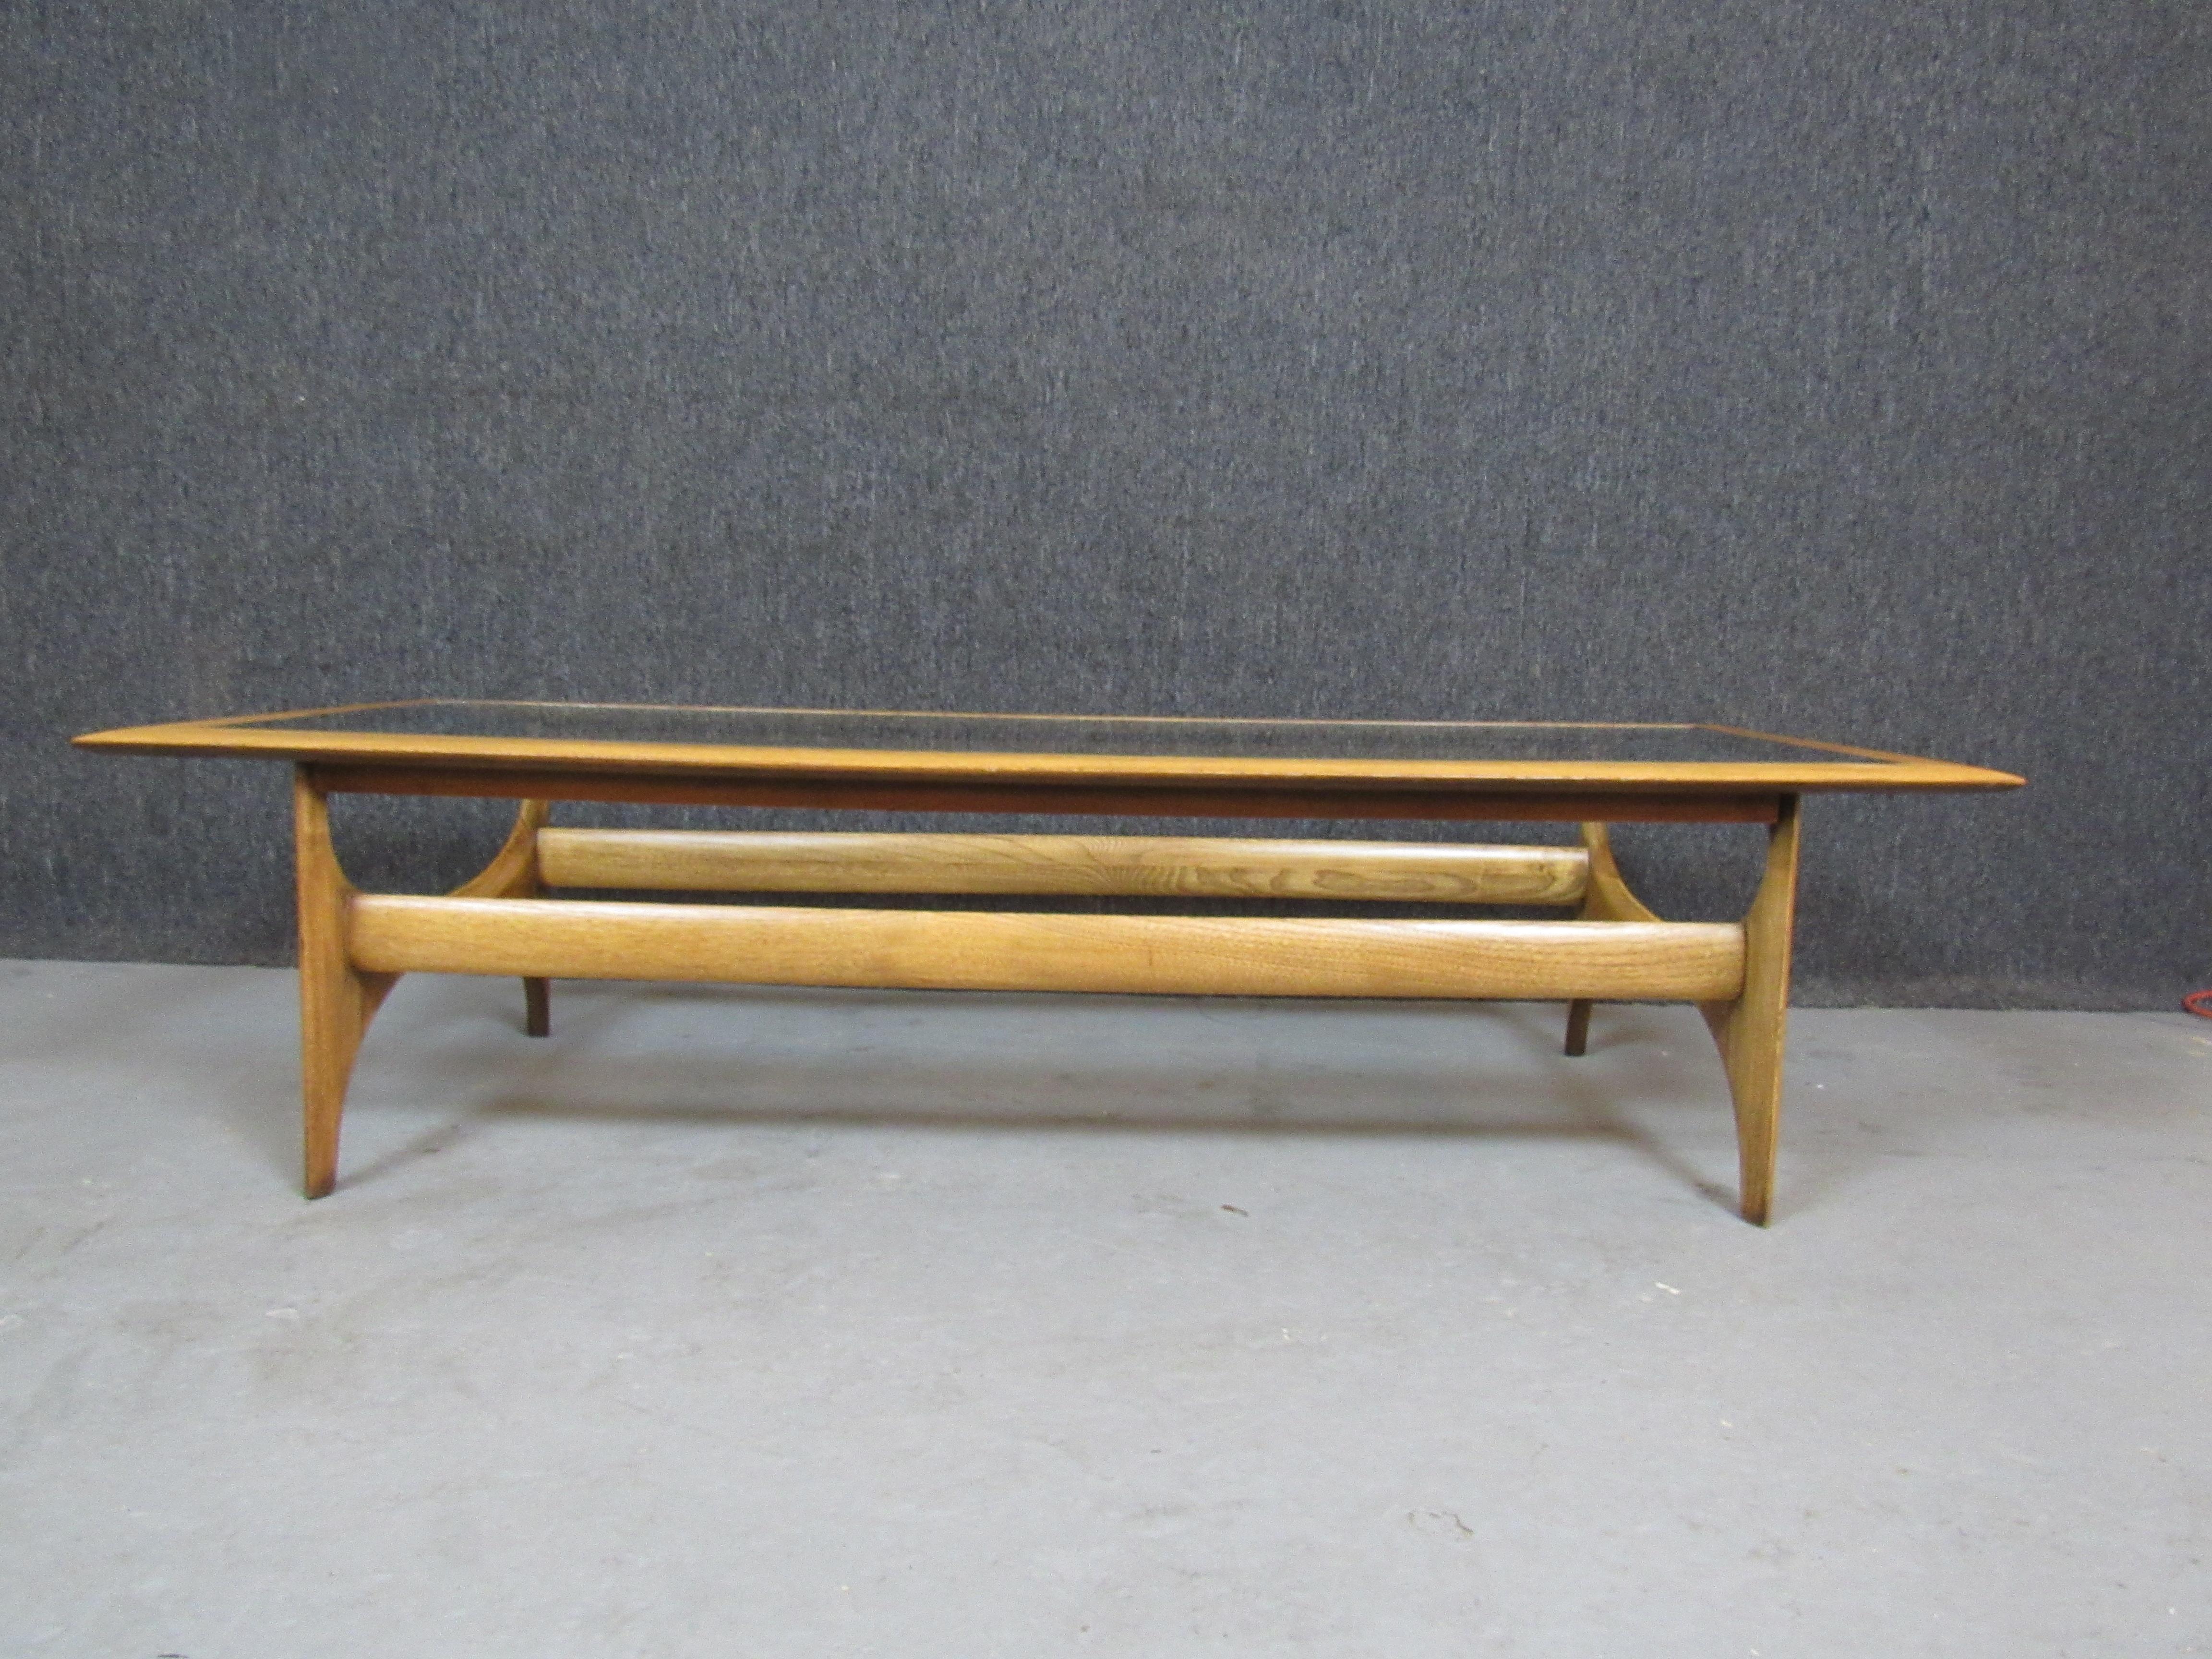 Fantastique table basse américaine moderne du milieu du siècle provenant de la légendaire Lane Furniture Company d'Altavista, en Virginie. Un cadre sculptural en chêne rend hommage aux conceptions de Paul Evans et d'Oscar Niemeyer, mêlant à la fois